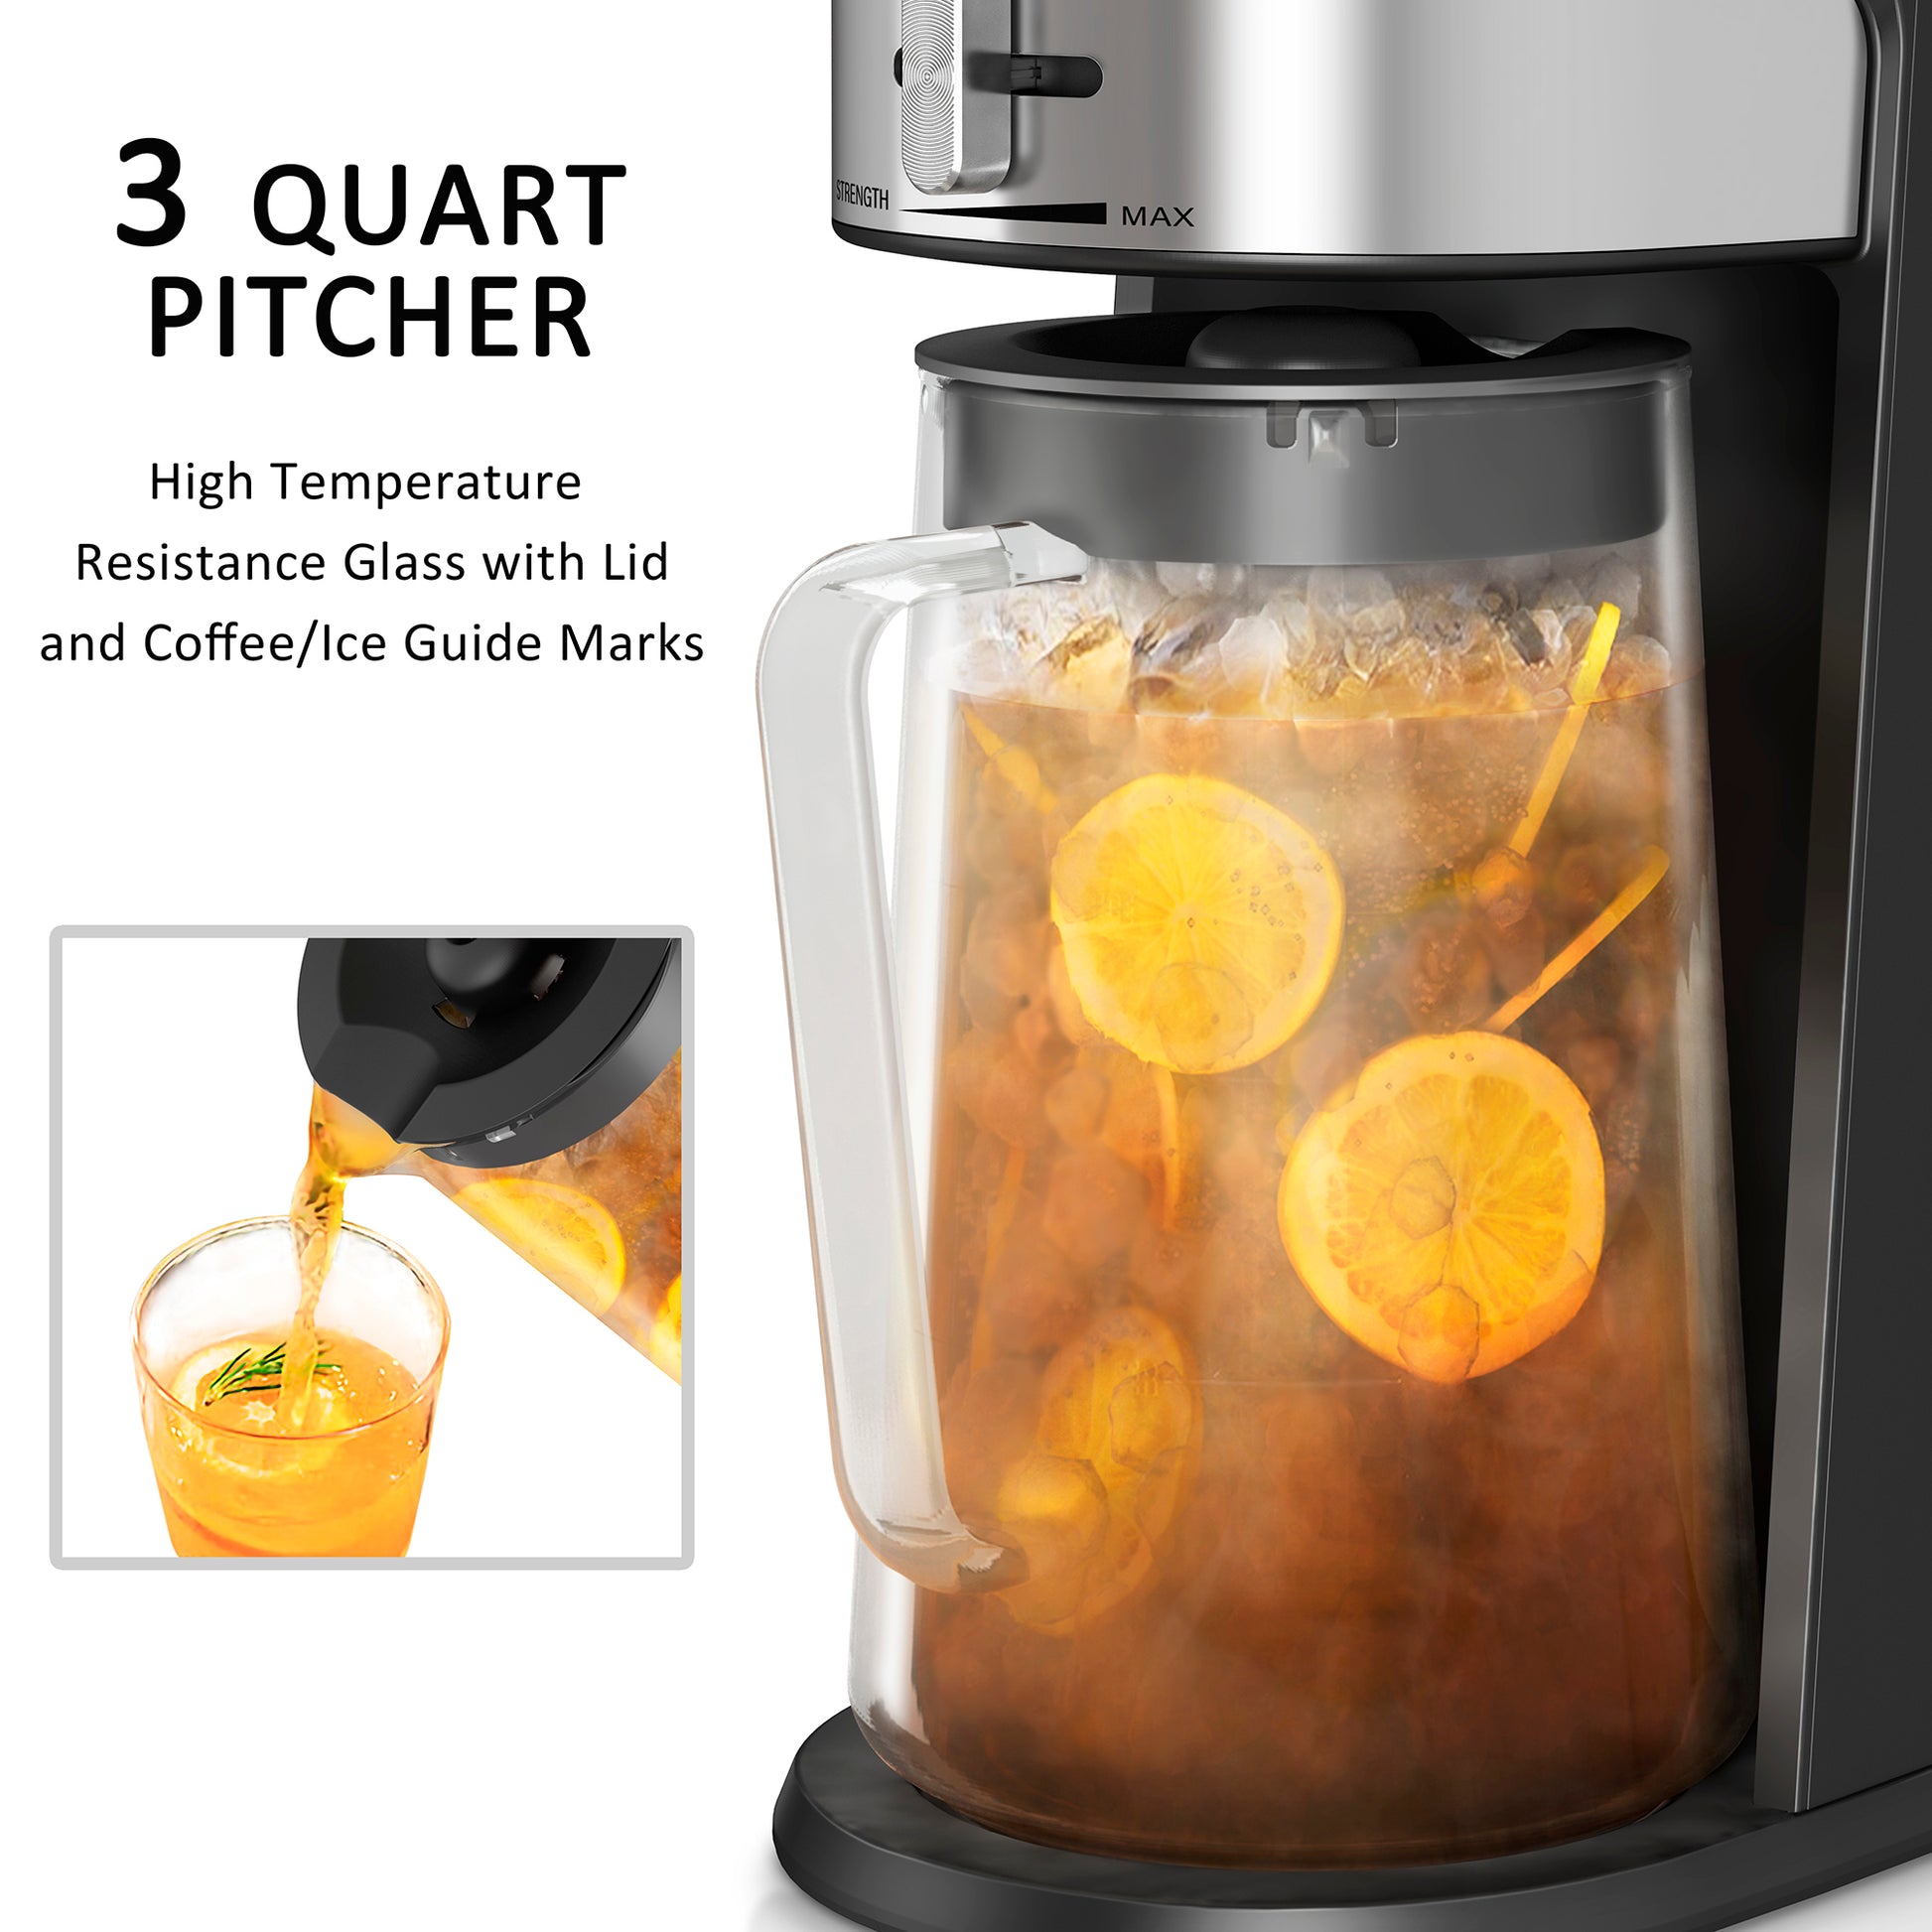 < img src="ice tea coffee maker.jpg" alt="wirsh ice tea coffee maker 3Qt pitchers"/>